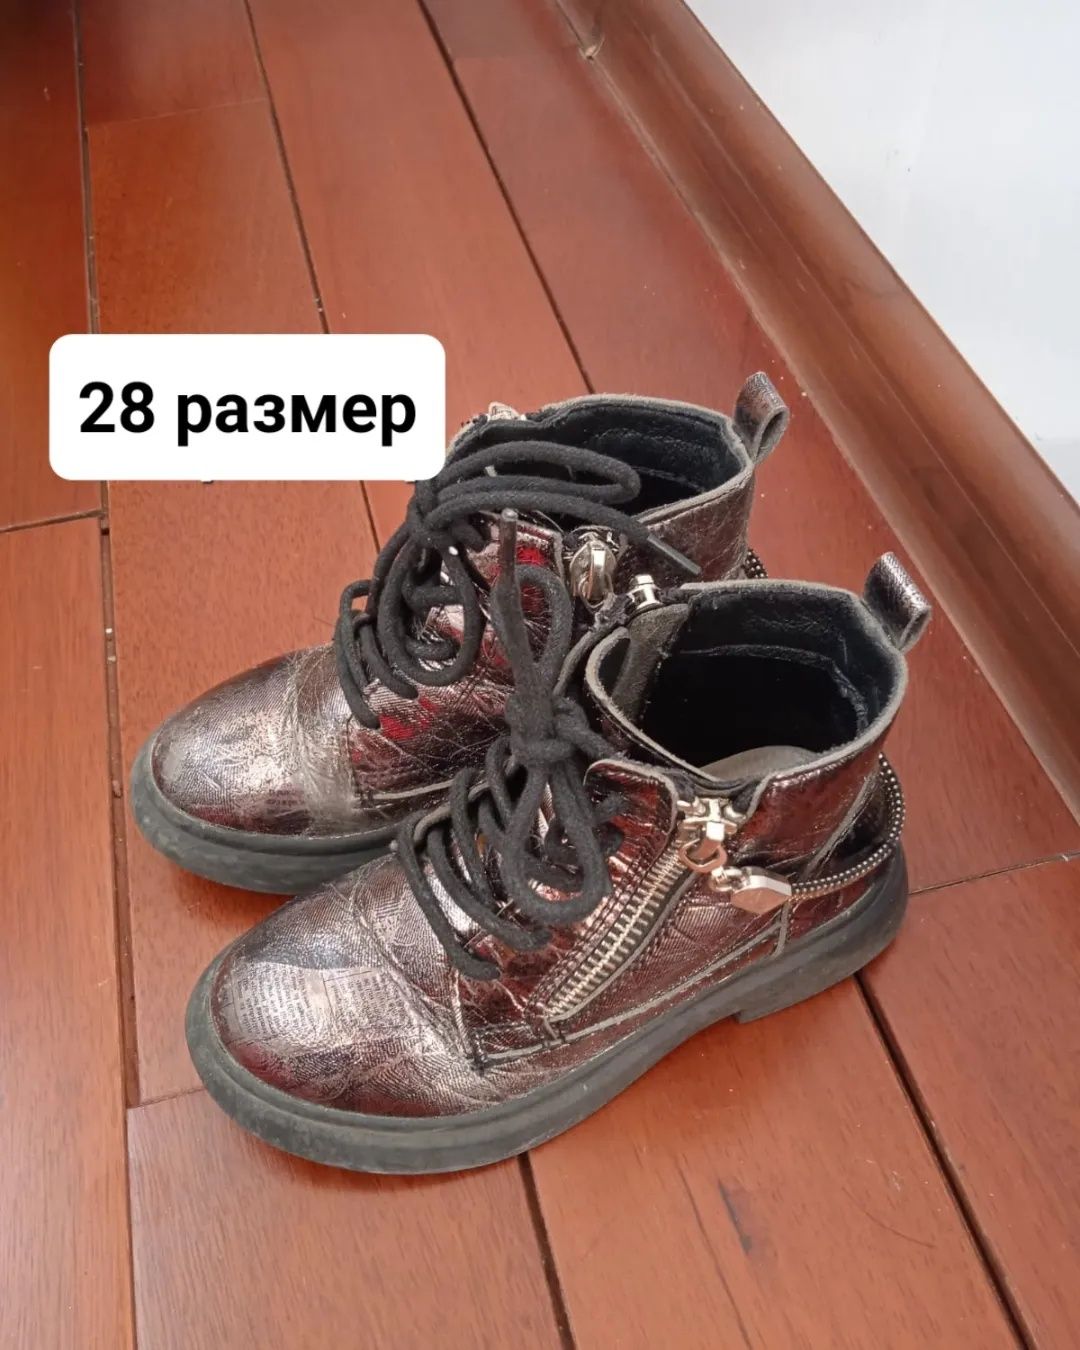 Кожаные чешки иразные обуви для фитнеса и танца